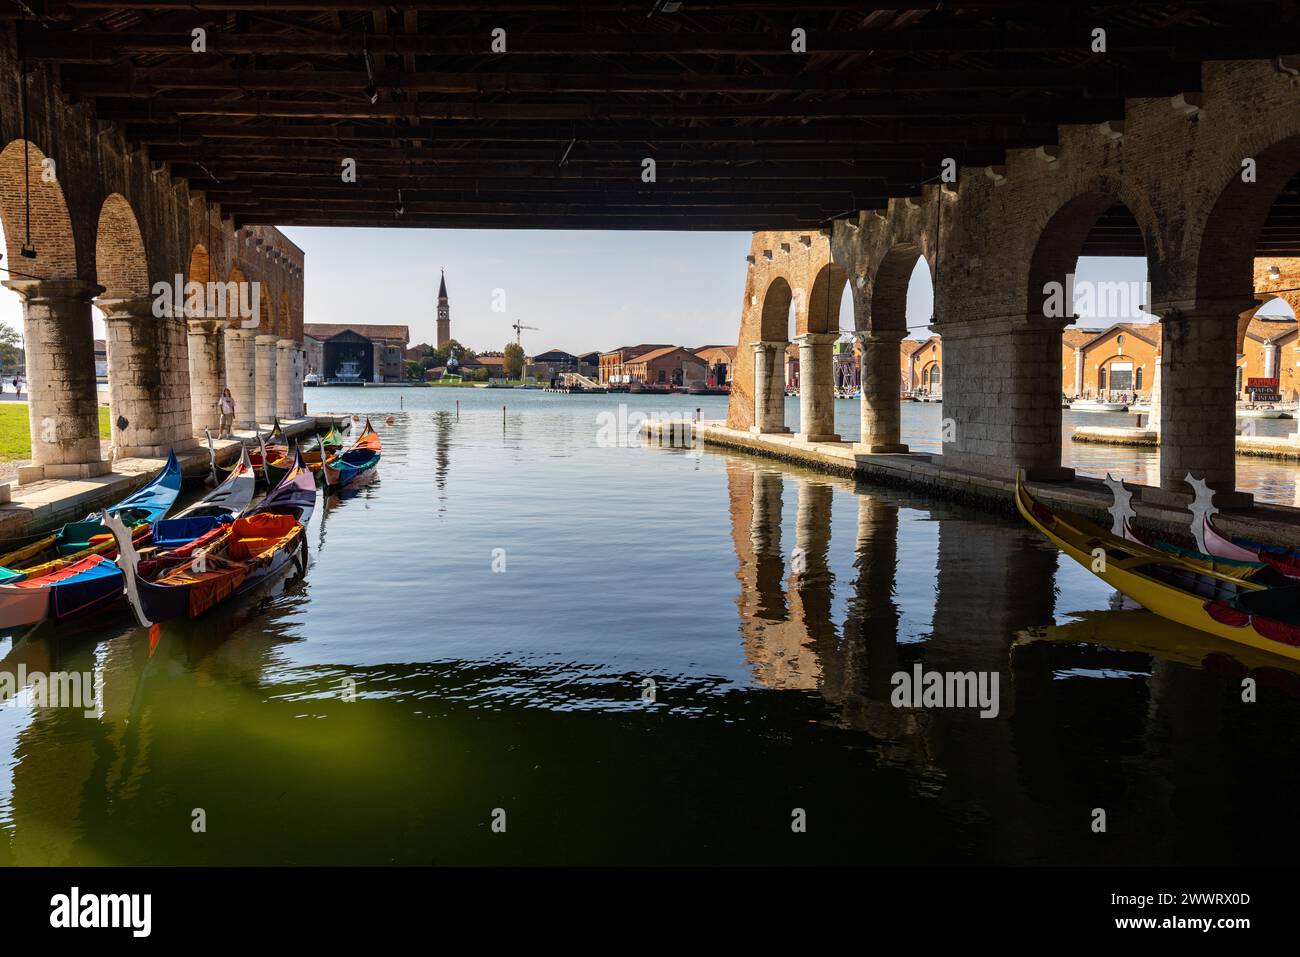 Venezia, Italia - l'Arsenale di Venezia. Il Gaggiandre, due magnifici cantieri navali costruiti tra il 1568 e il 1573 su alcuni disegni attribuiti a Jacopo sa Foto Stock